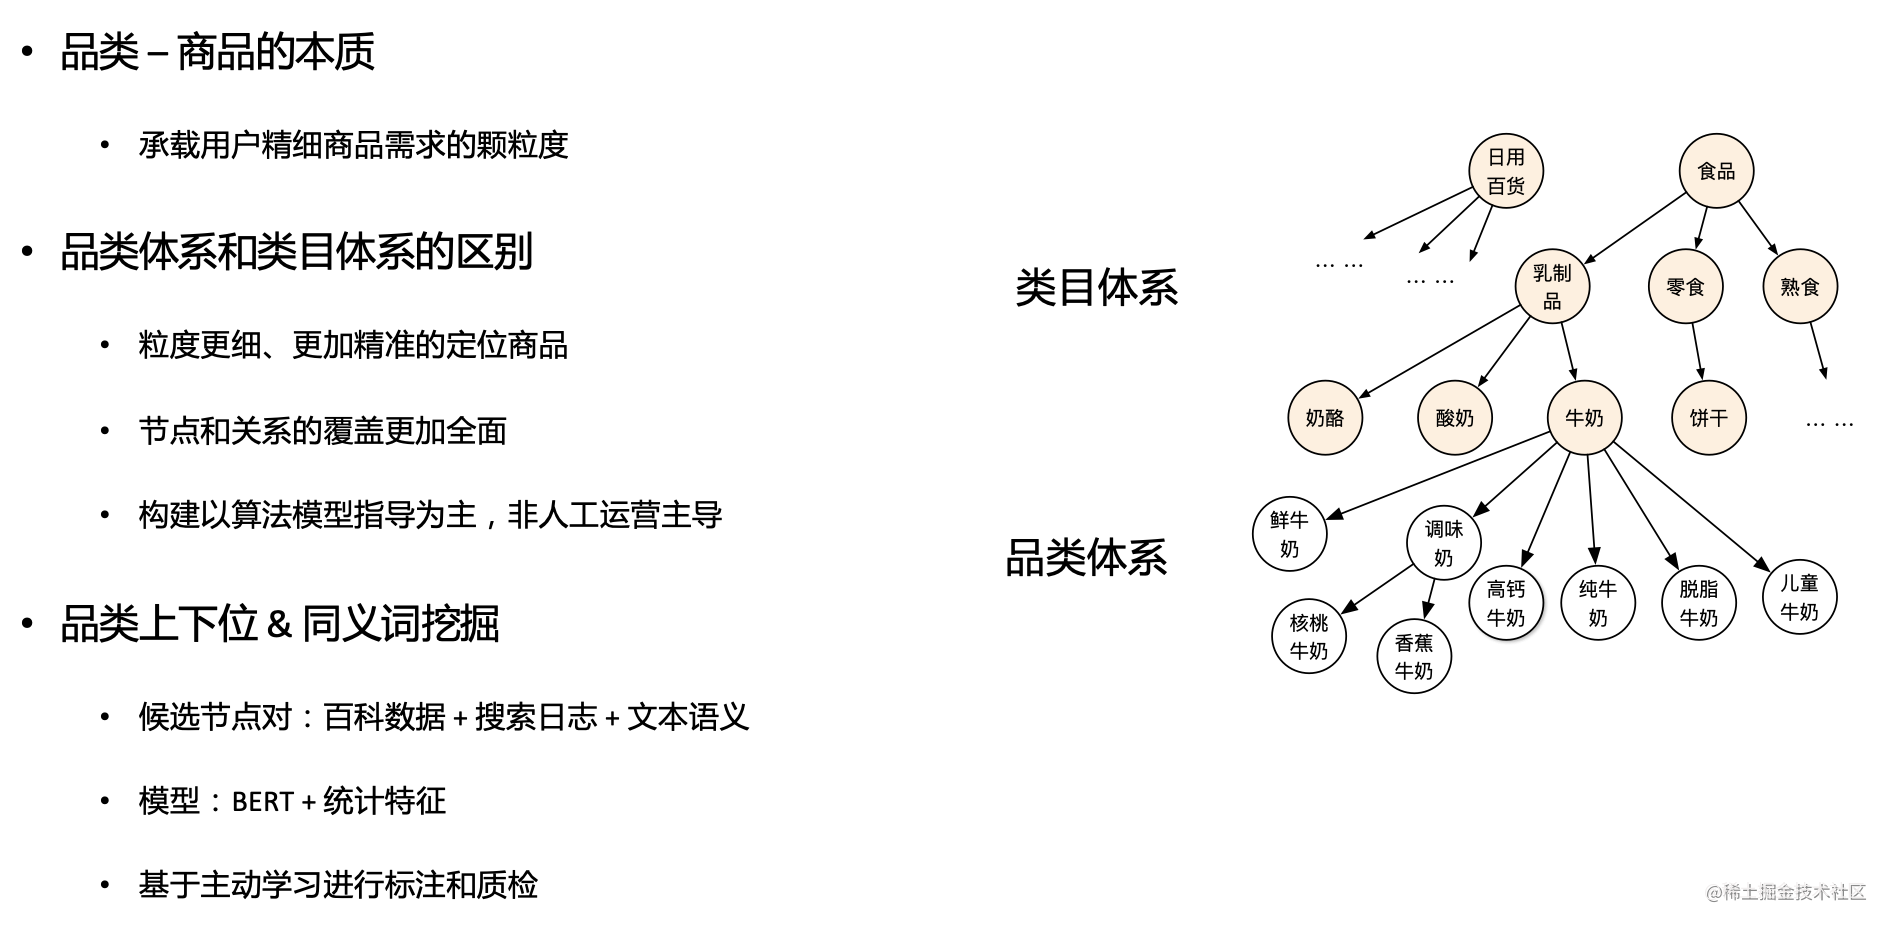 图5 商品图谱品类体系的构建